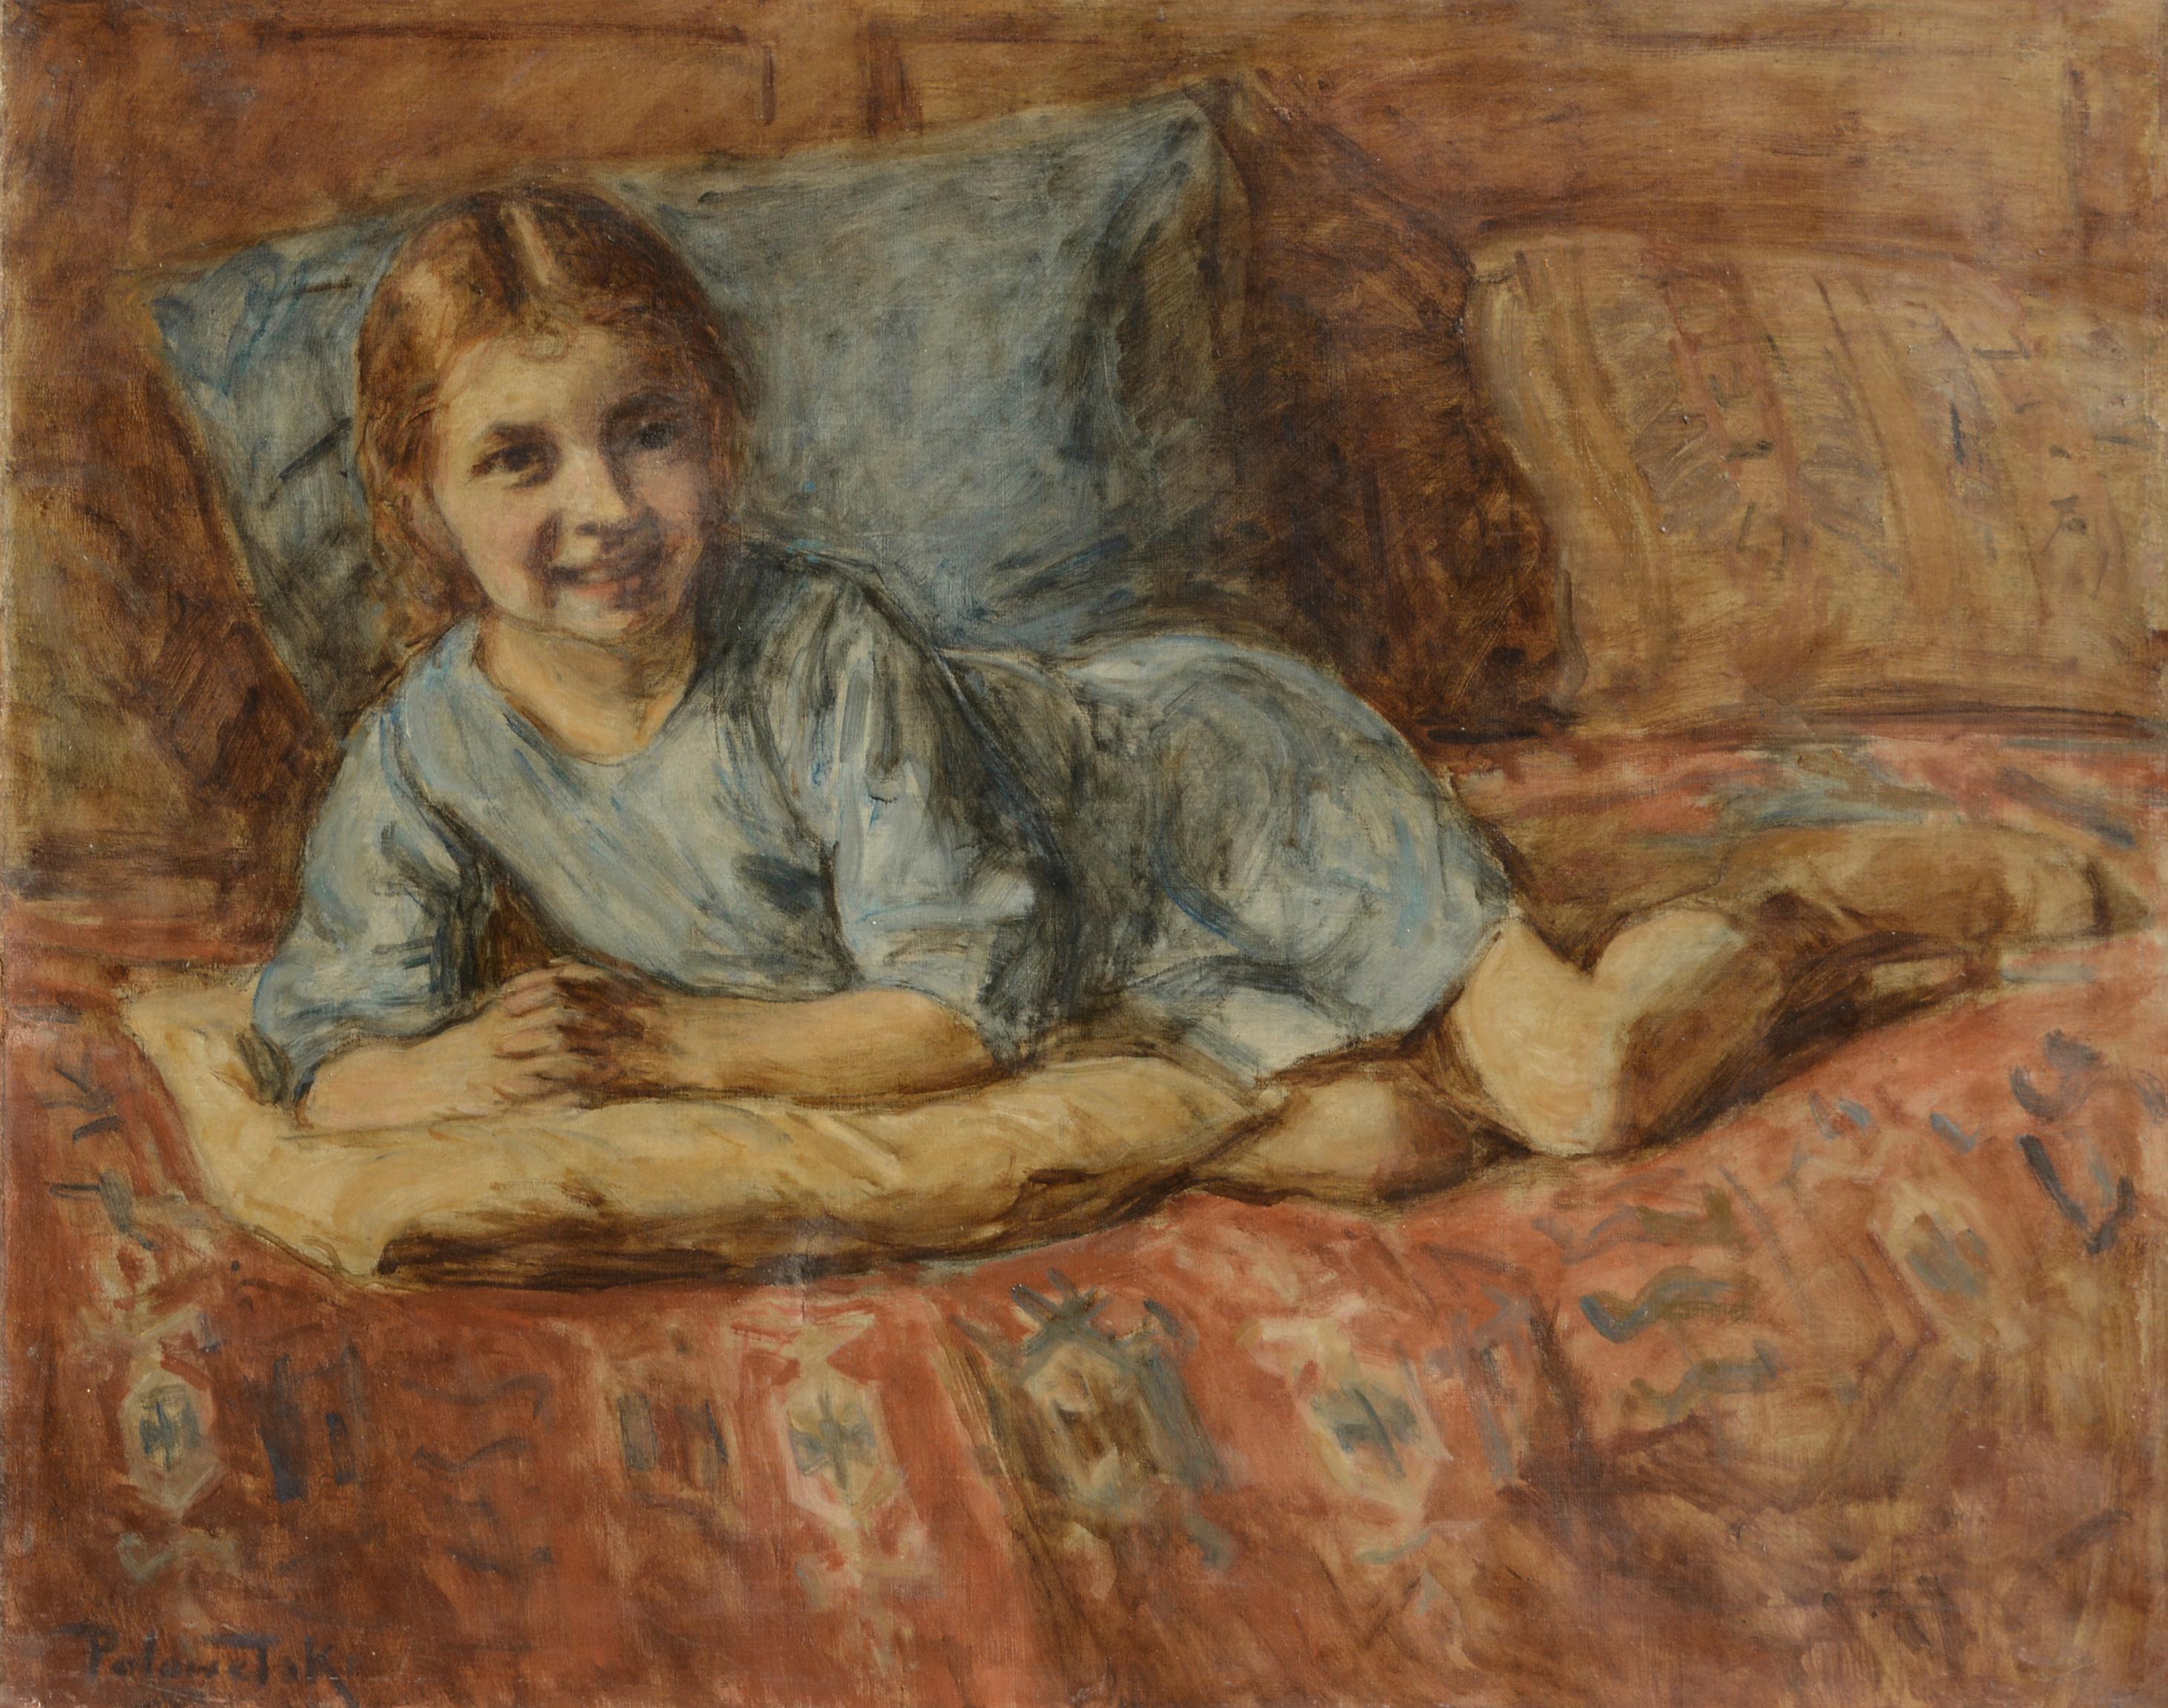 Porträt eines jungen Mädchens in Blau aus dem frühen 20. Jahrhundert – Painting von Charles Ezekiel Polowetski